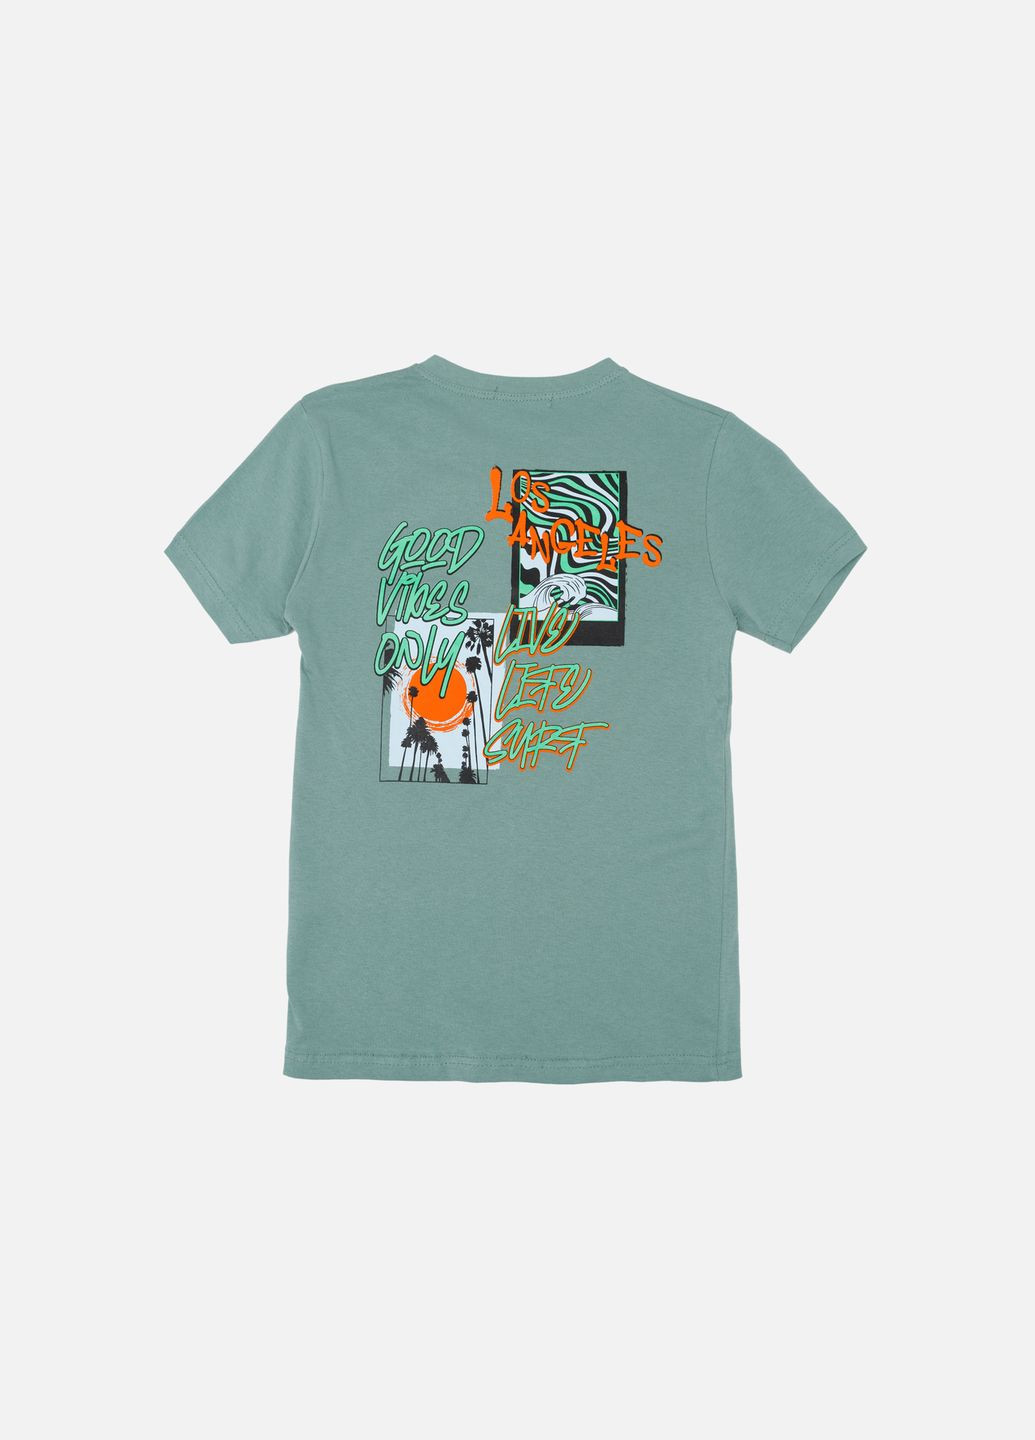 Оливковая летняя футболка с коротким рукавом для мальчика цвет оливковый цб-00243943 Essu